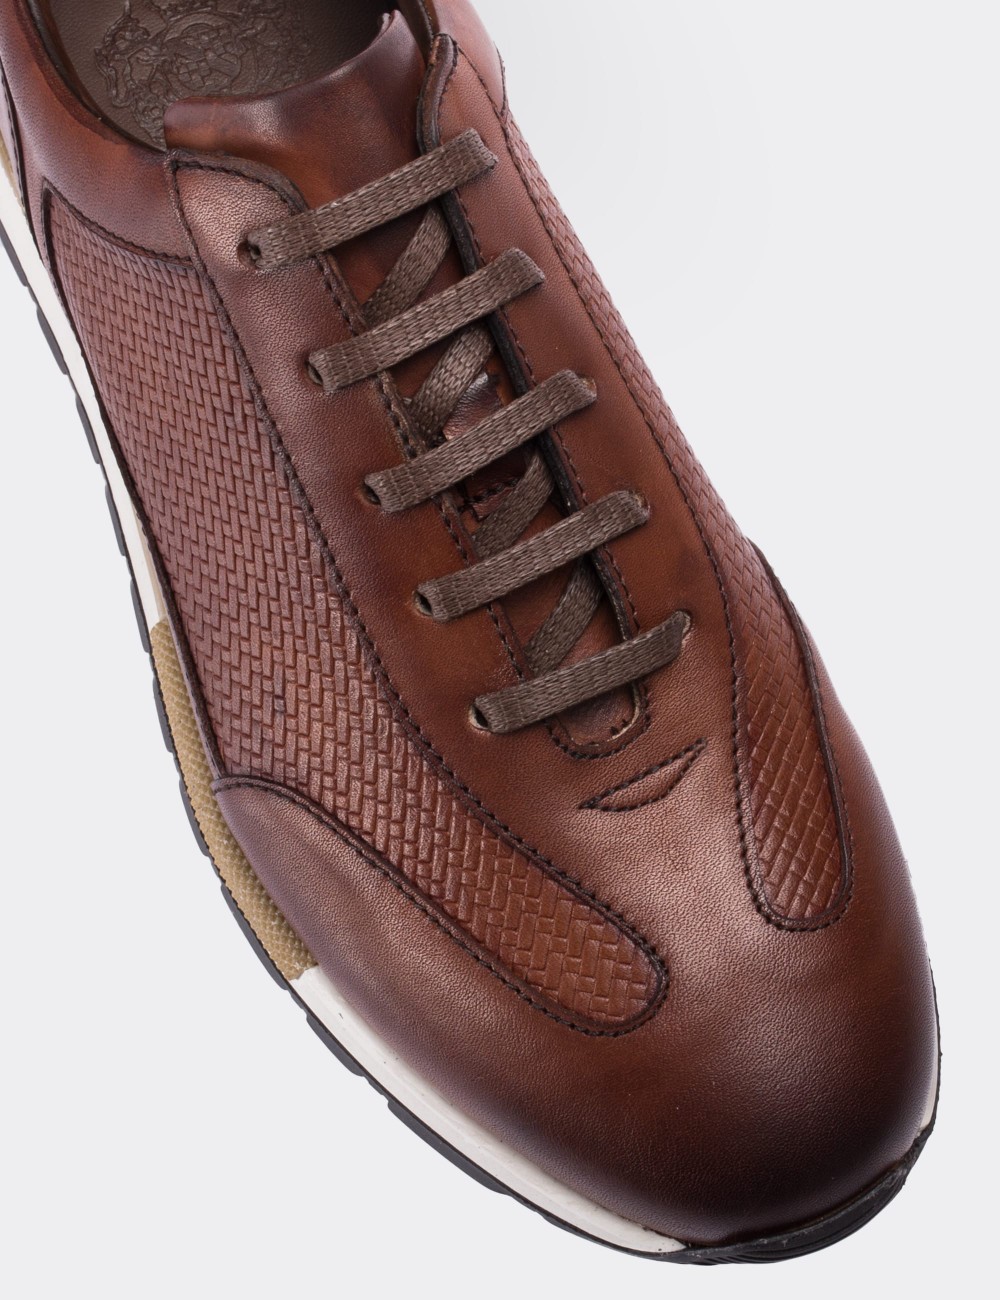 Tan  Leather Sneakers - 01729MTBAT01